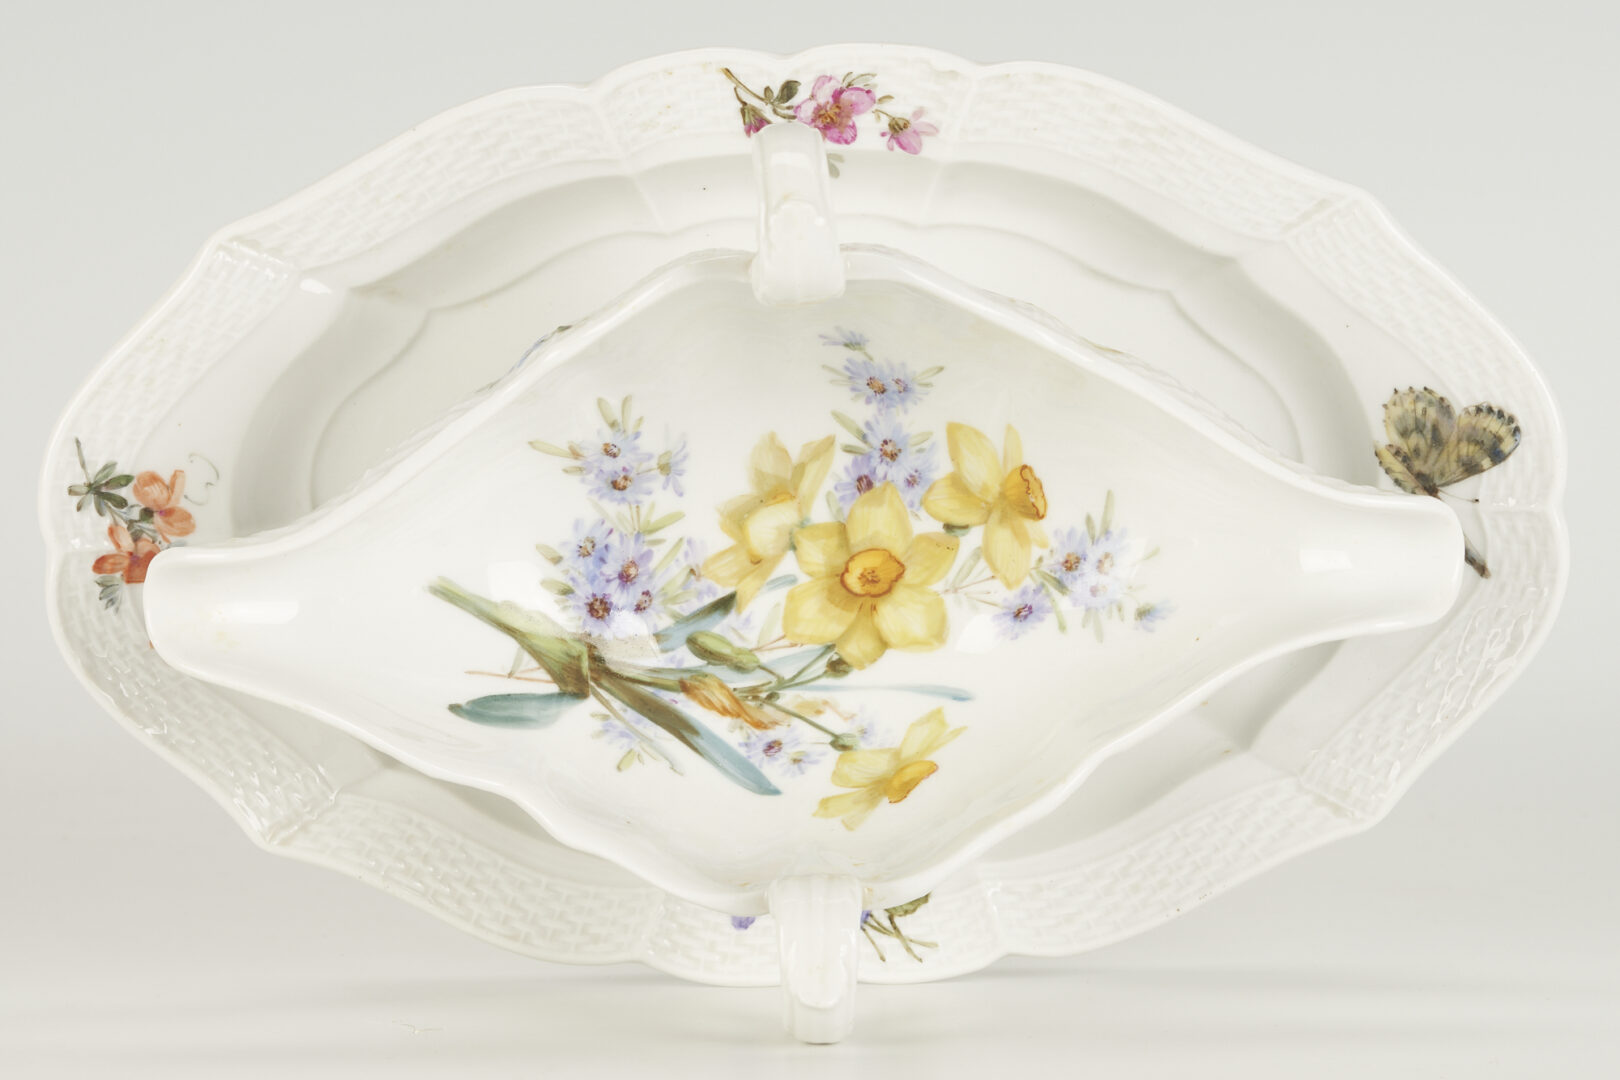 Lot 367: 52 Pcs. Meissen Floral Porcelain Dinnerware, Service for 12